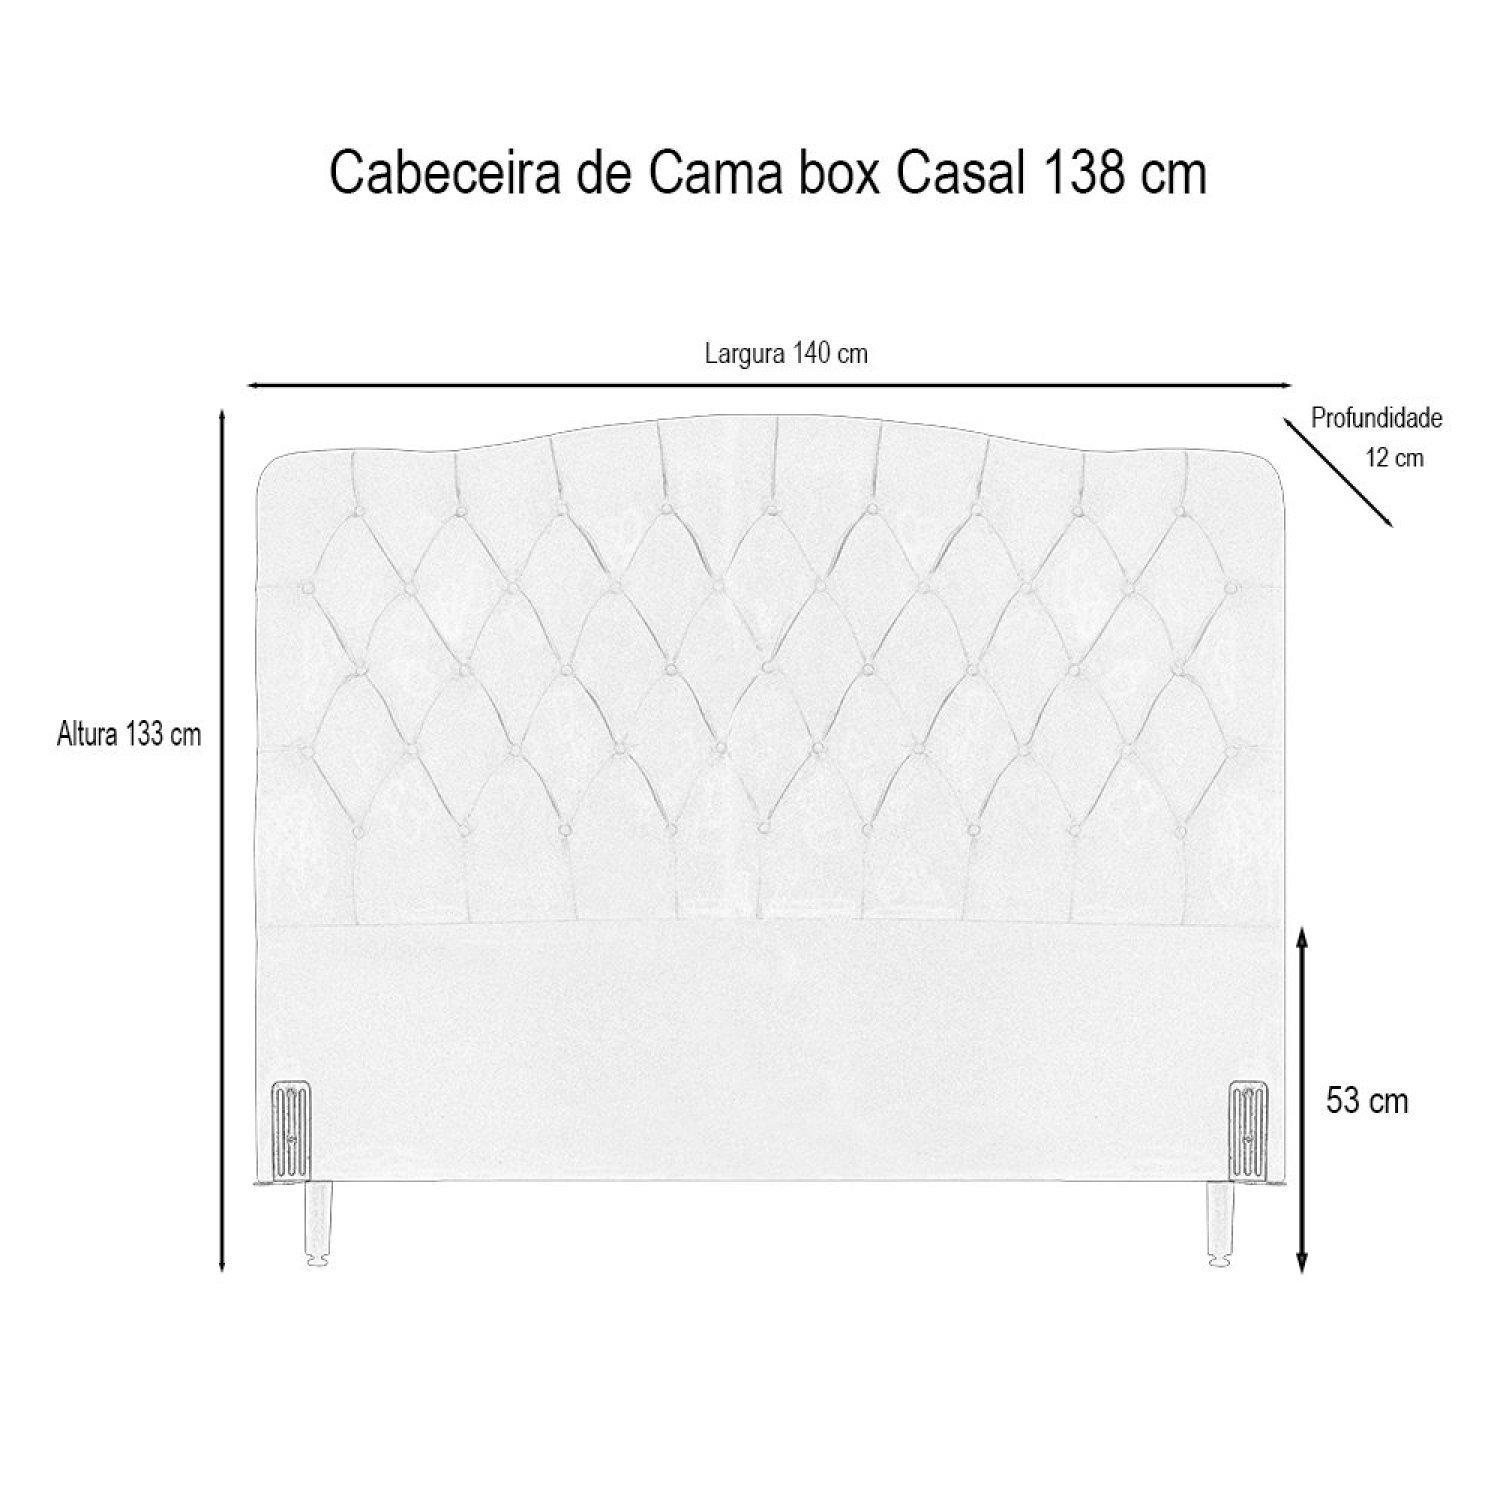 Cabeceira Dunas de Cama Box Casal 138 Cm - 4